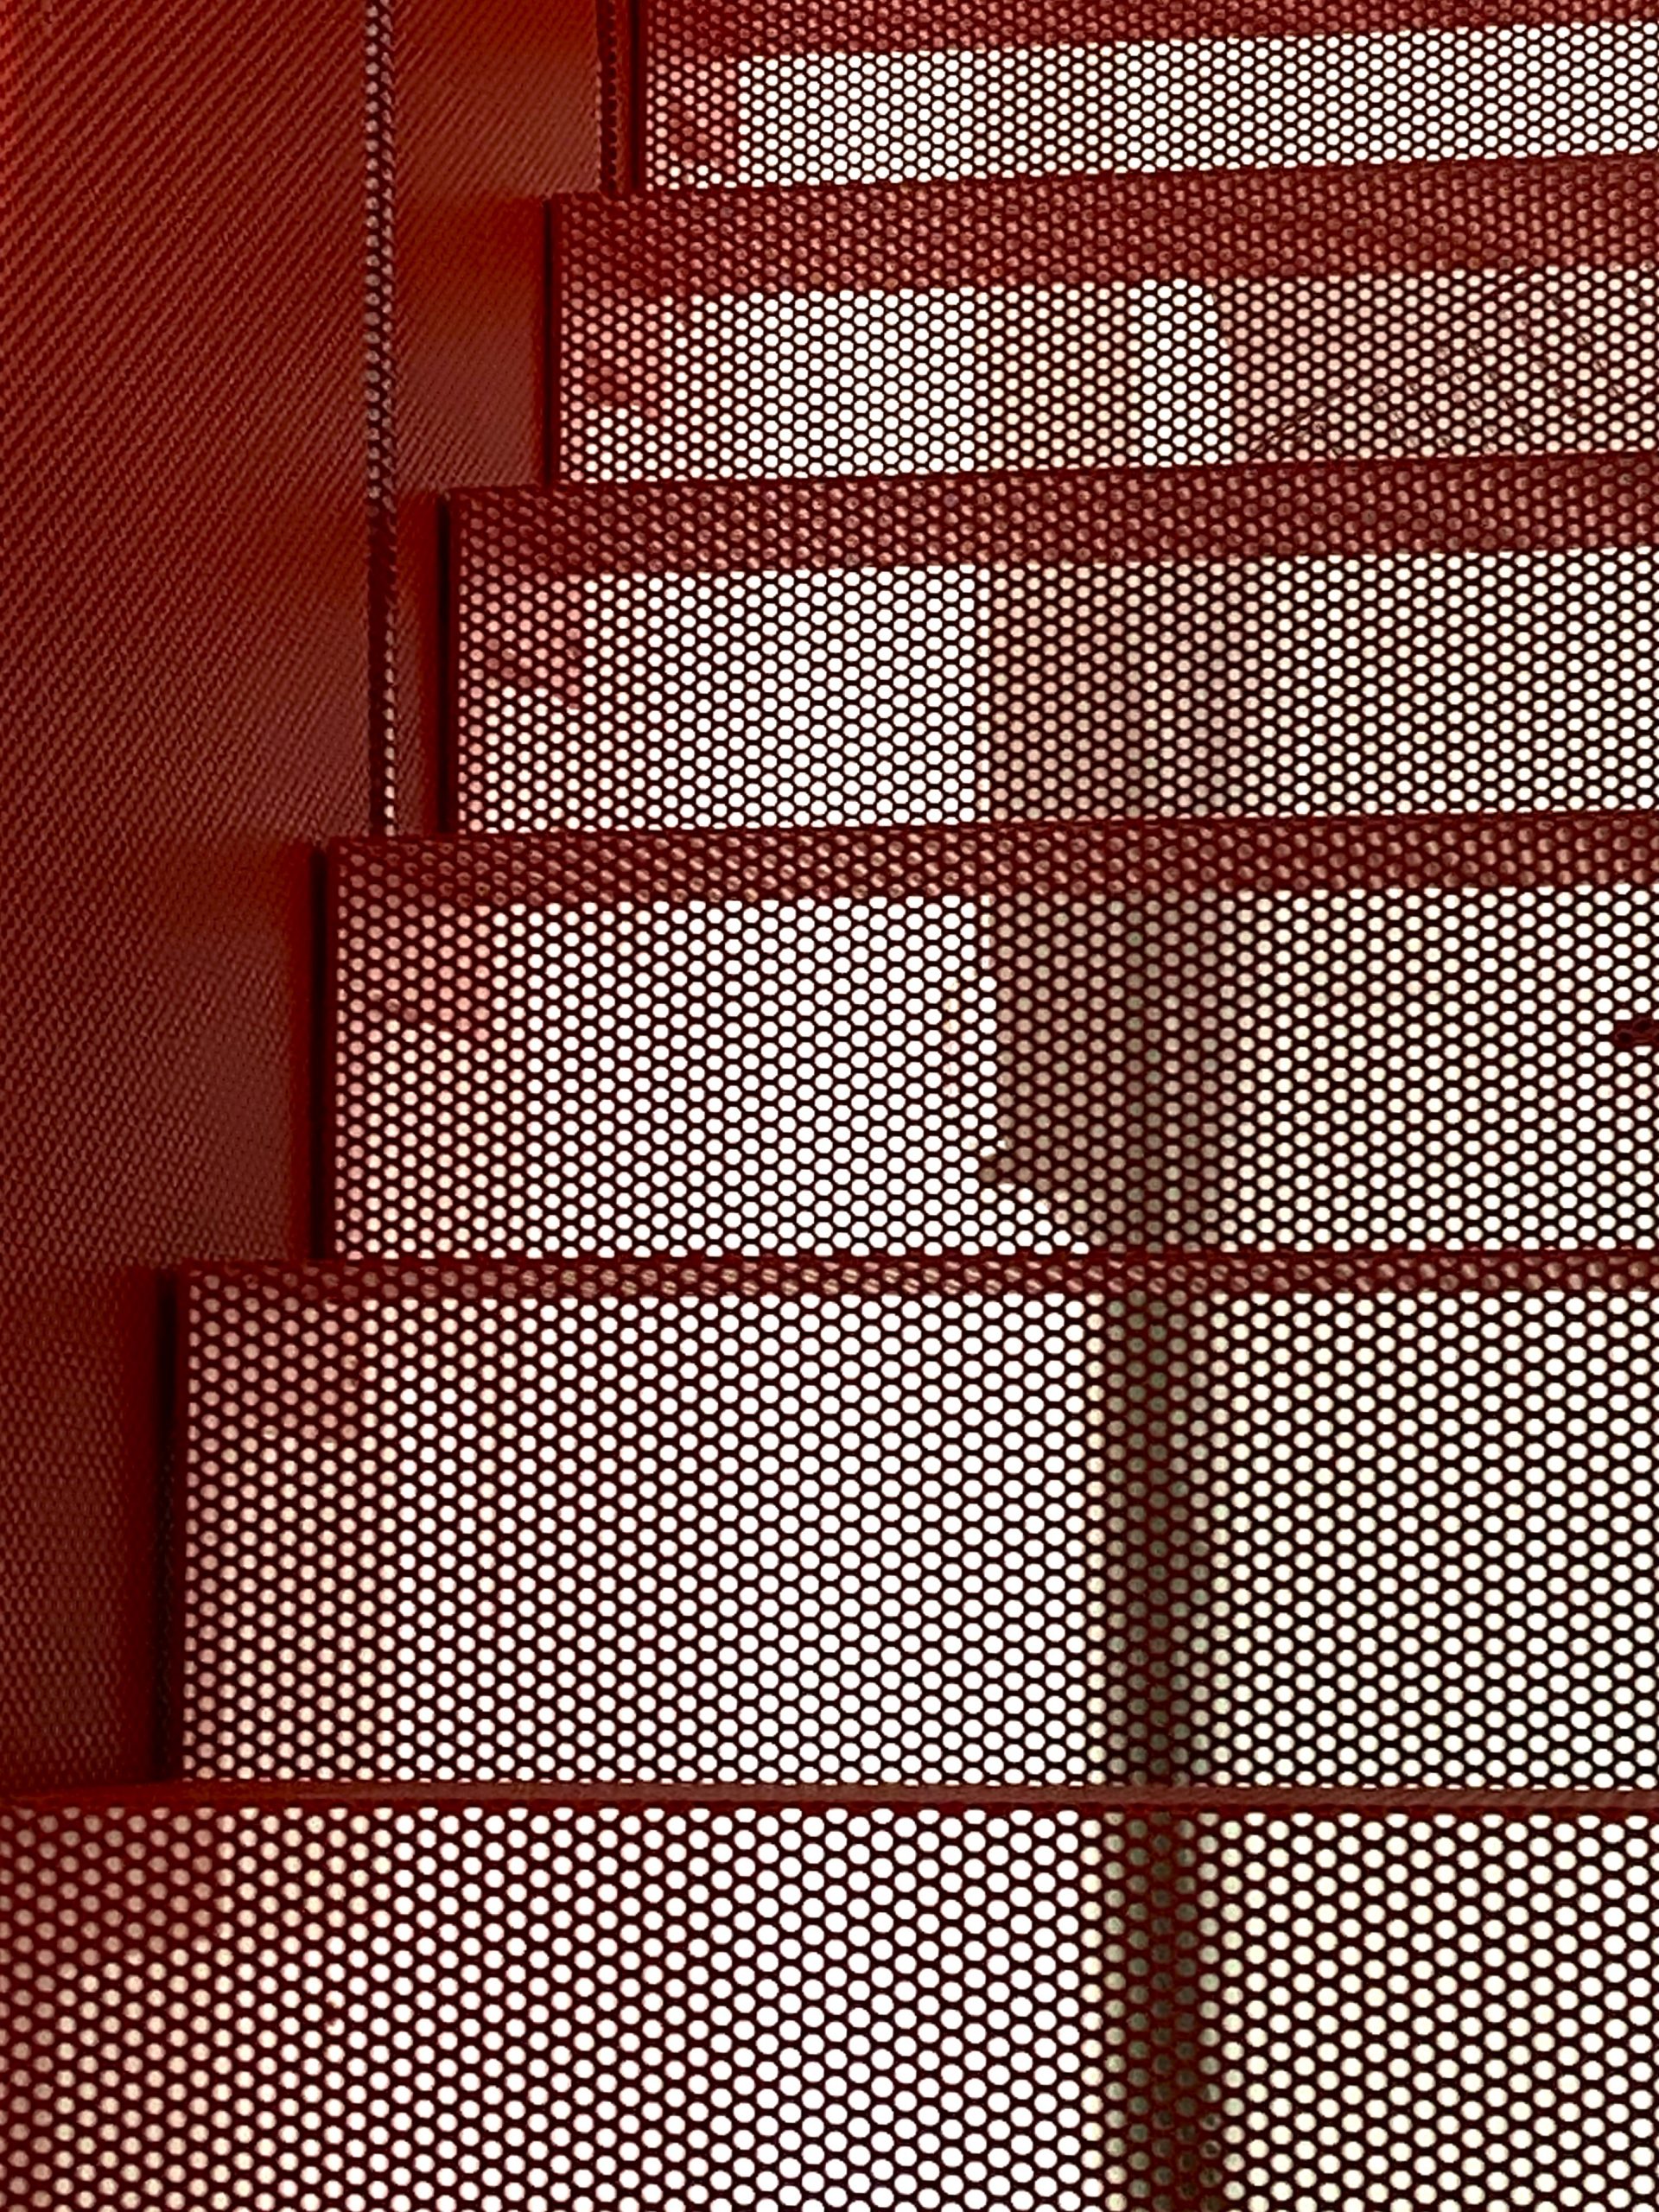 (Deutsch) czerwone schody z perforacji